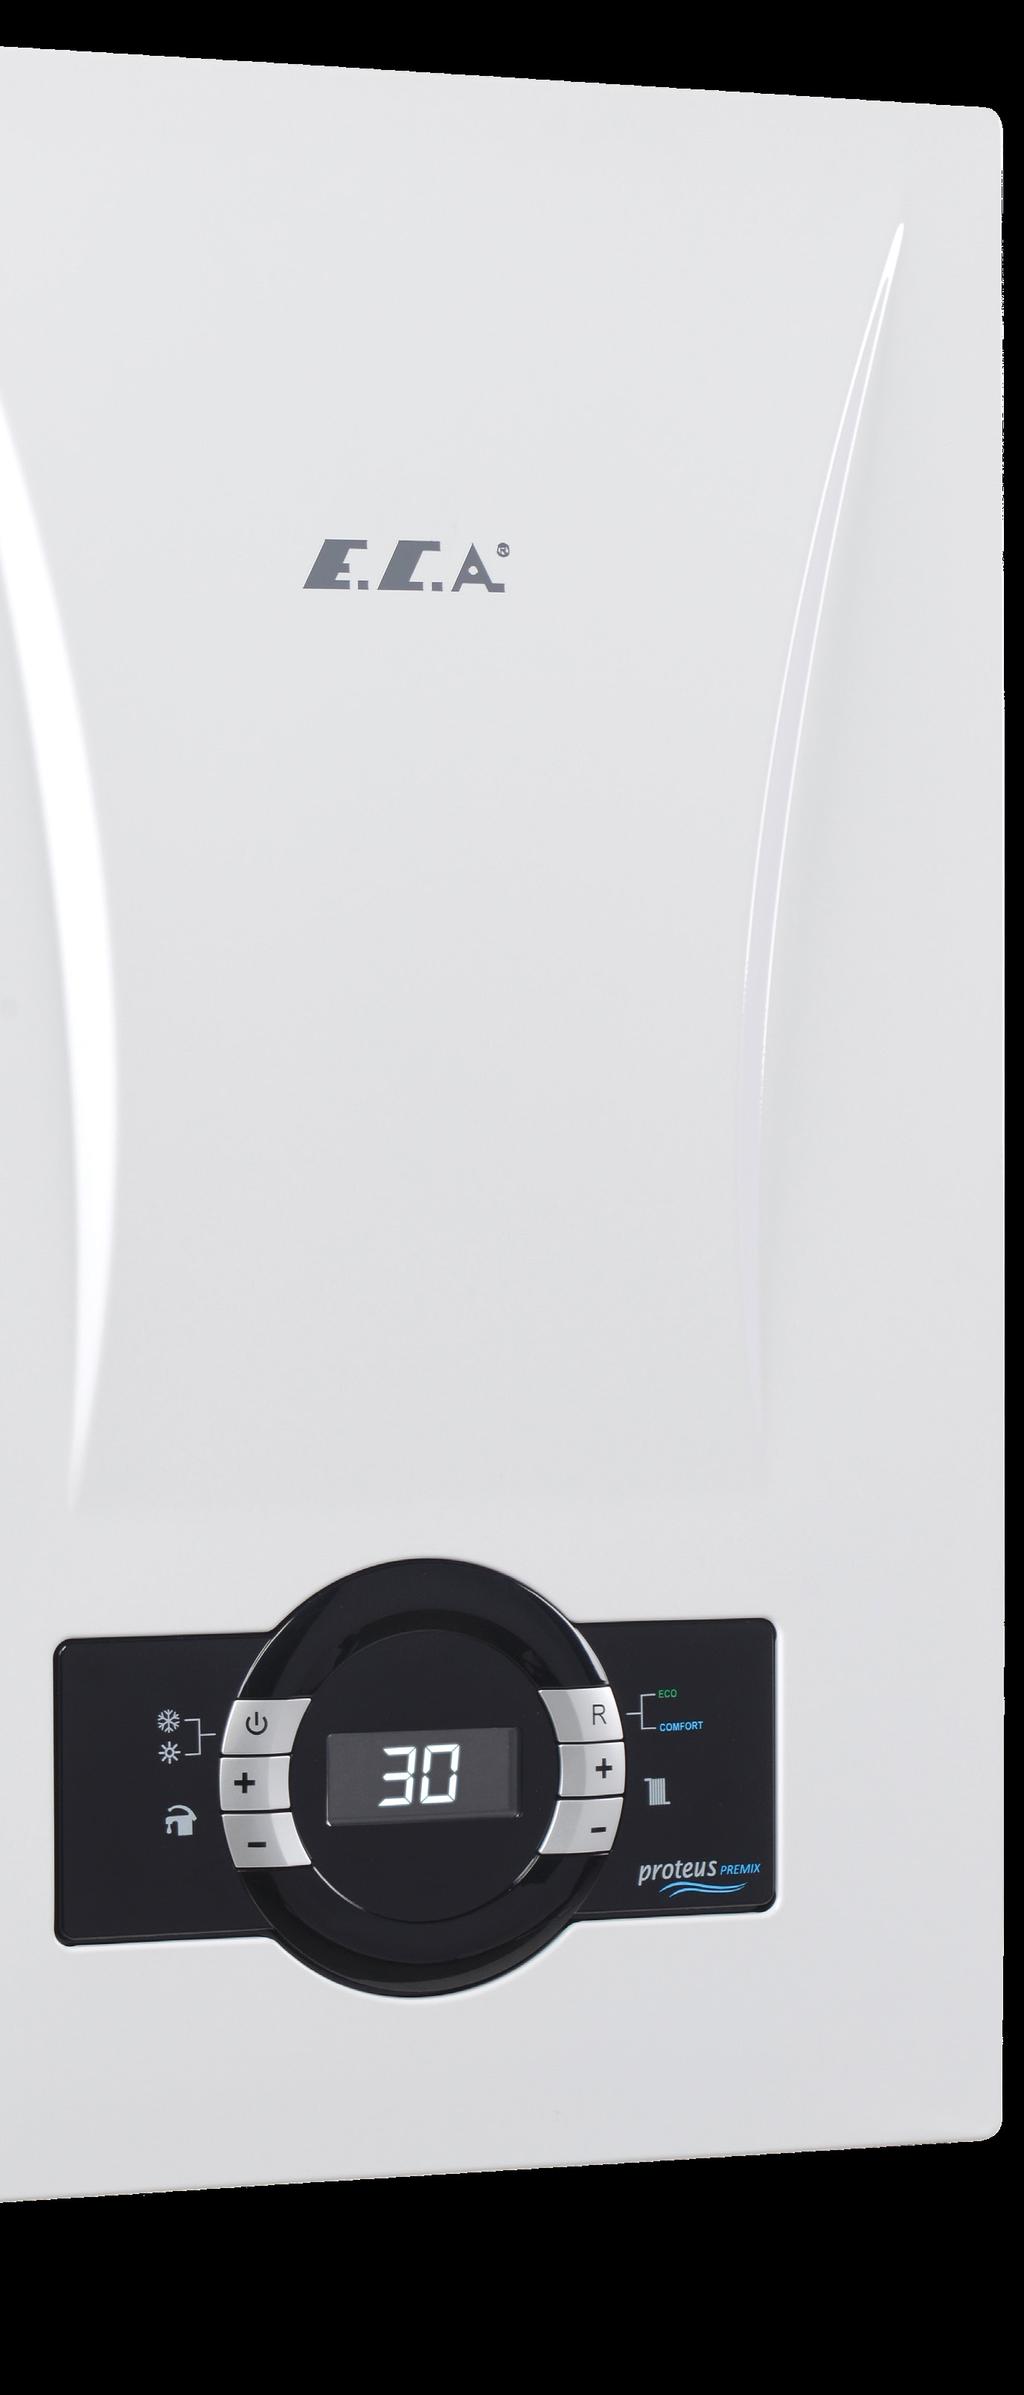 PROTEUS PREMİX, yoğuşma teknolojisiyle yüksek enerji tasarrufu sağlamakta ve aynı zamanda küçük boyutları, zarif görünümü ve ergonomik tasarımlı kumanda paneli ile göze de hitap eden bir ürün olma